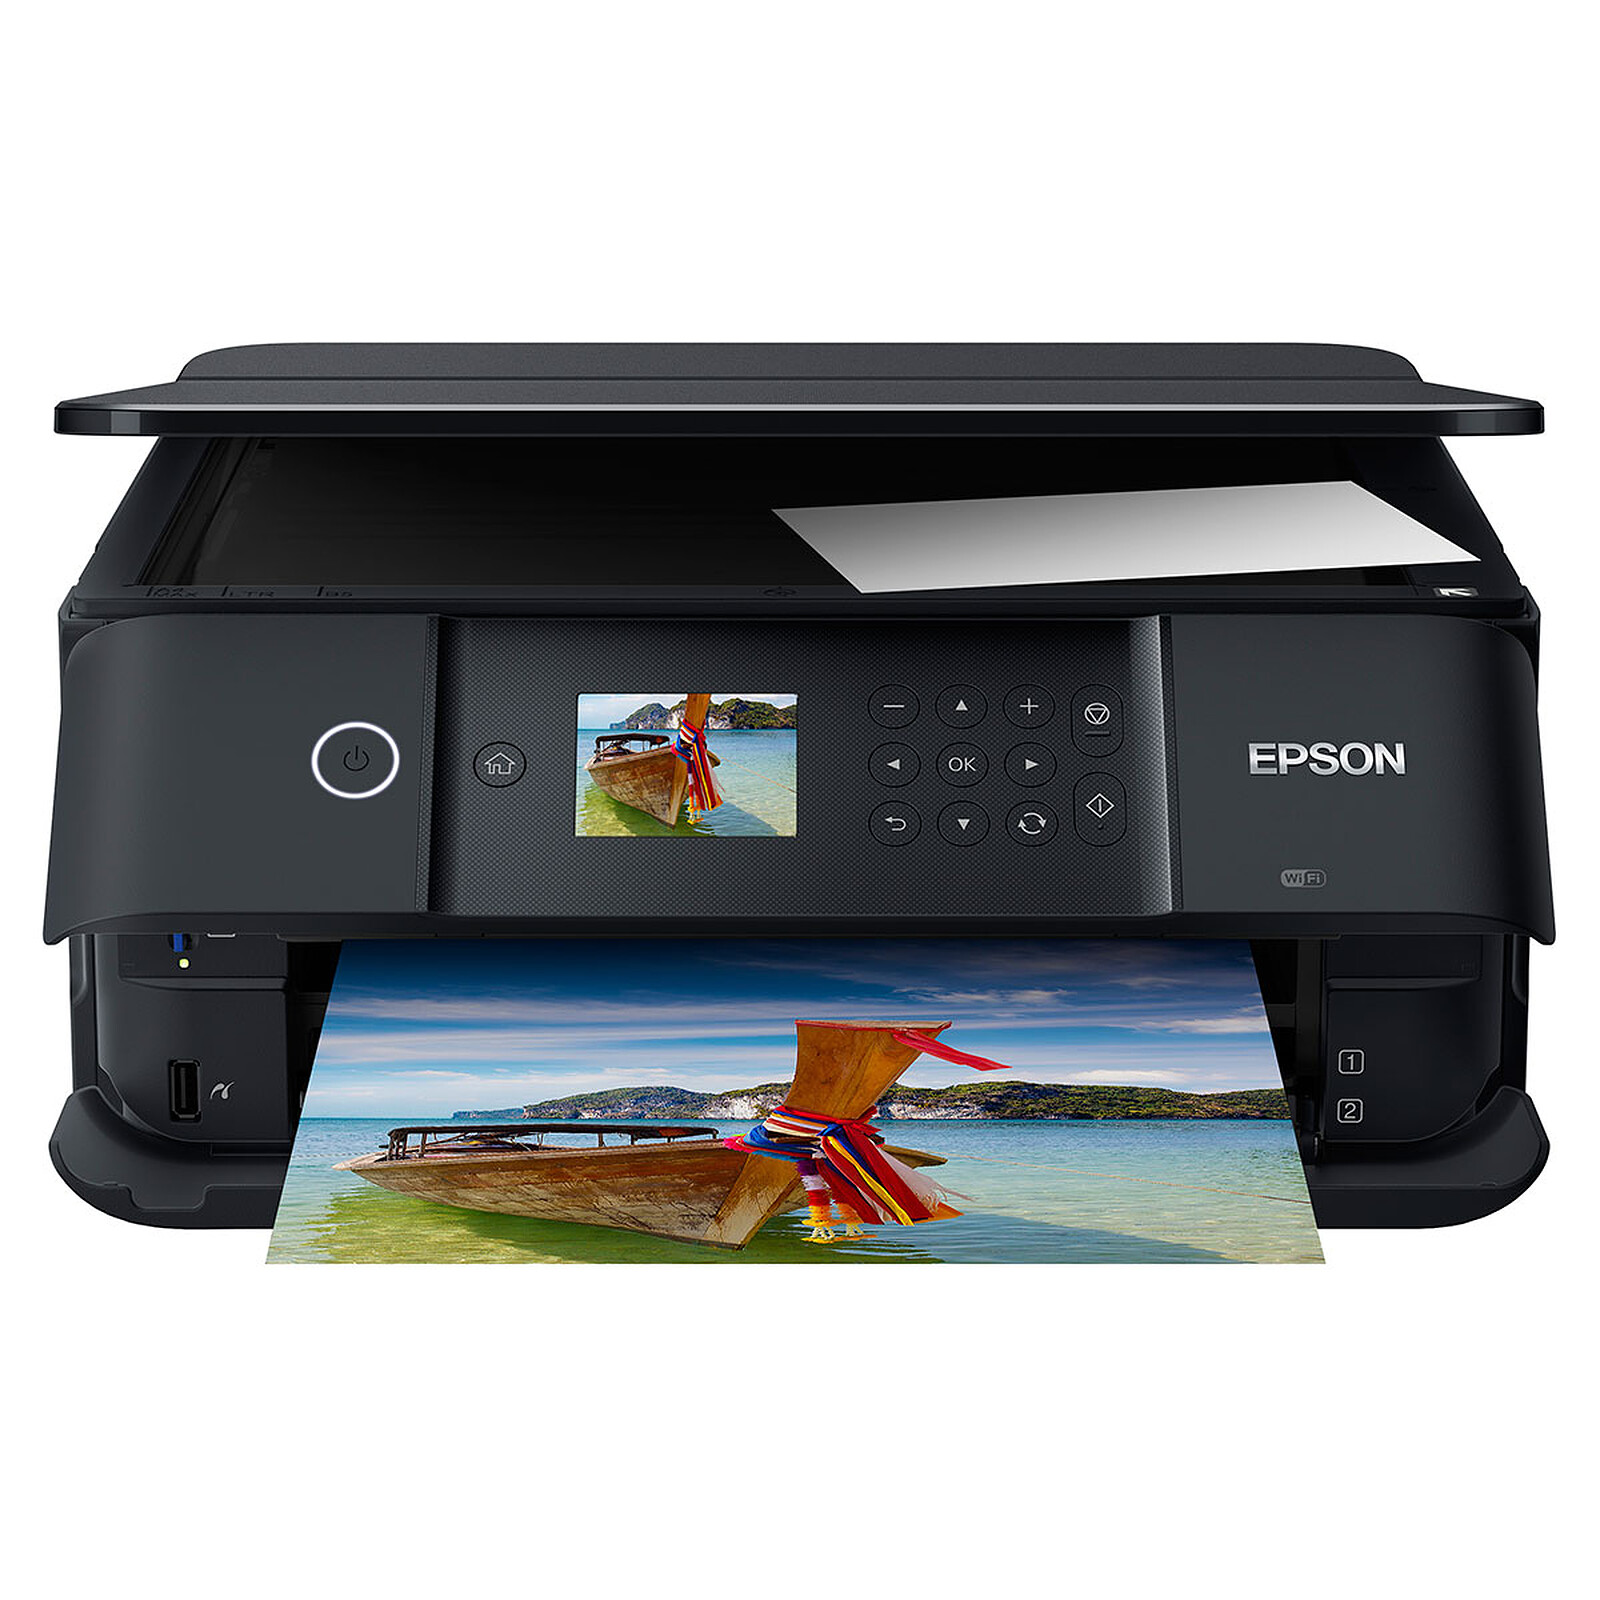 Mise en service de l'imprimante Epson XP-2200 